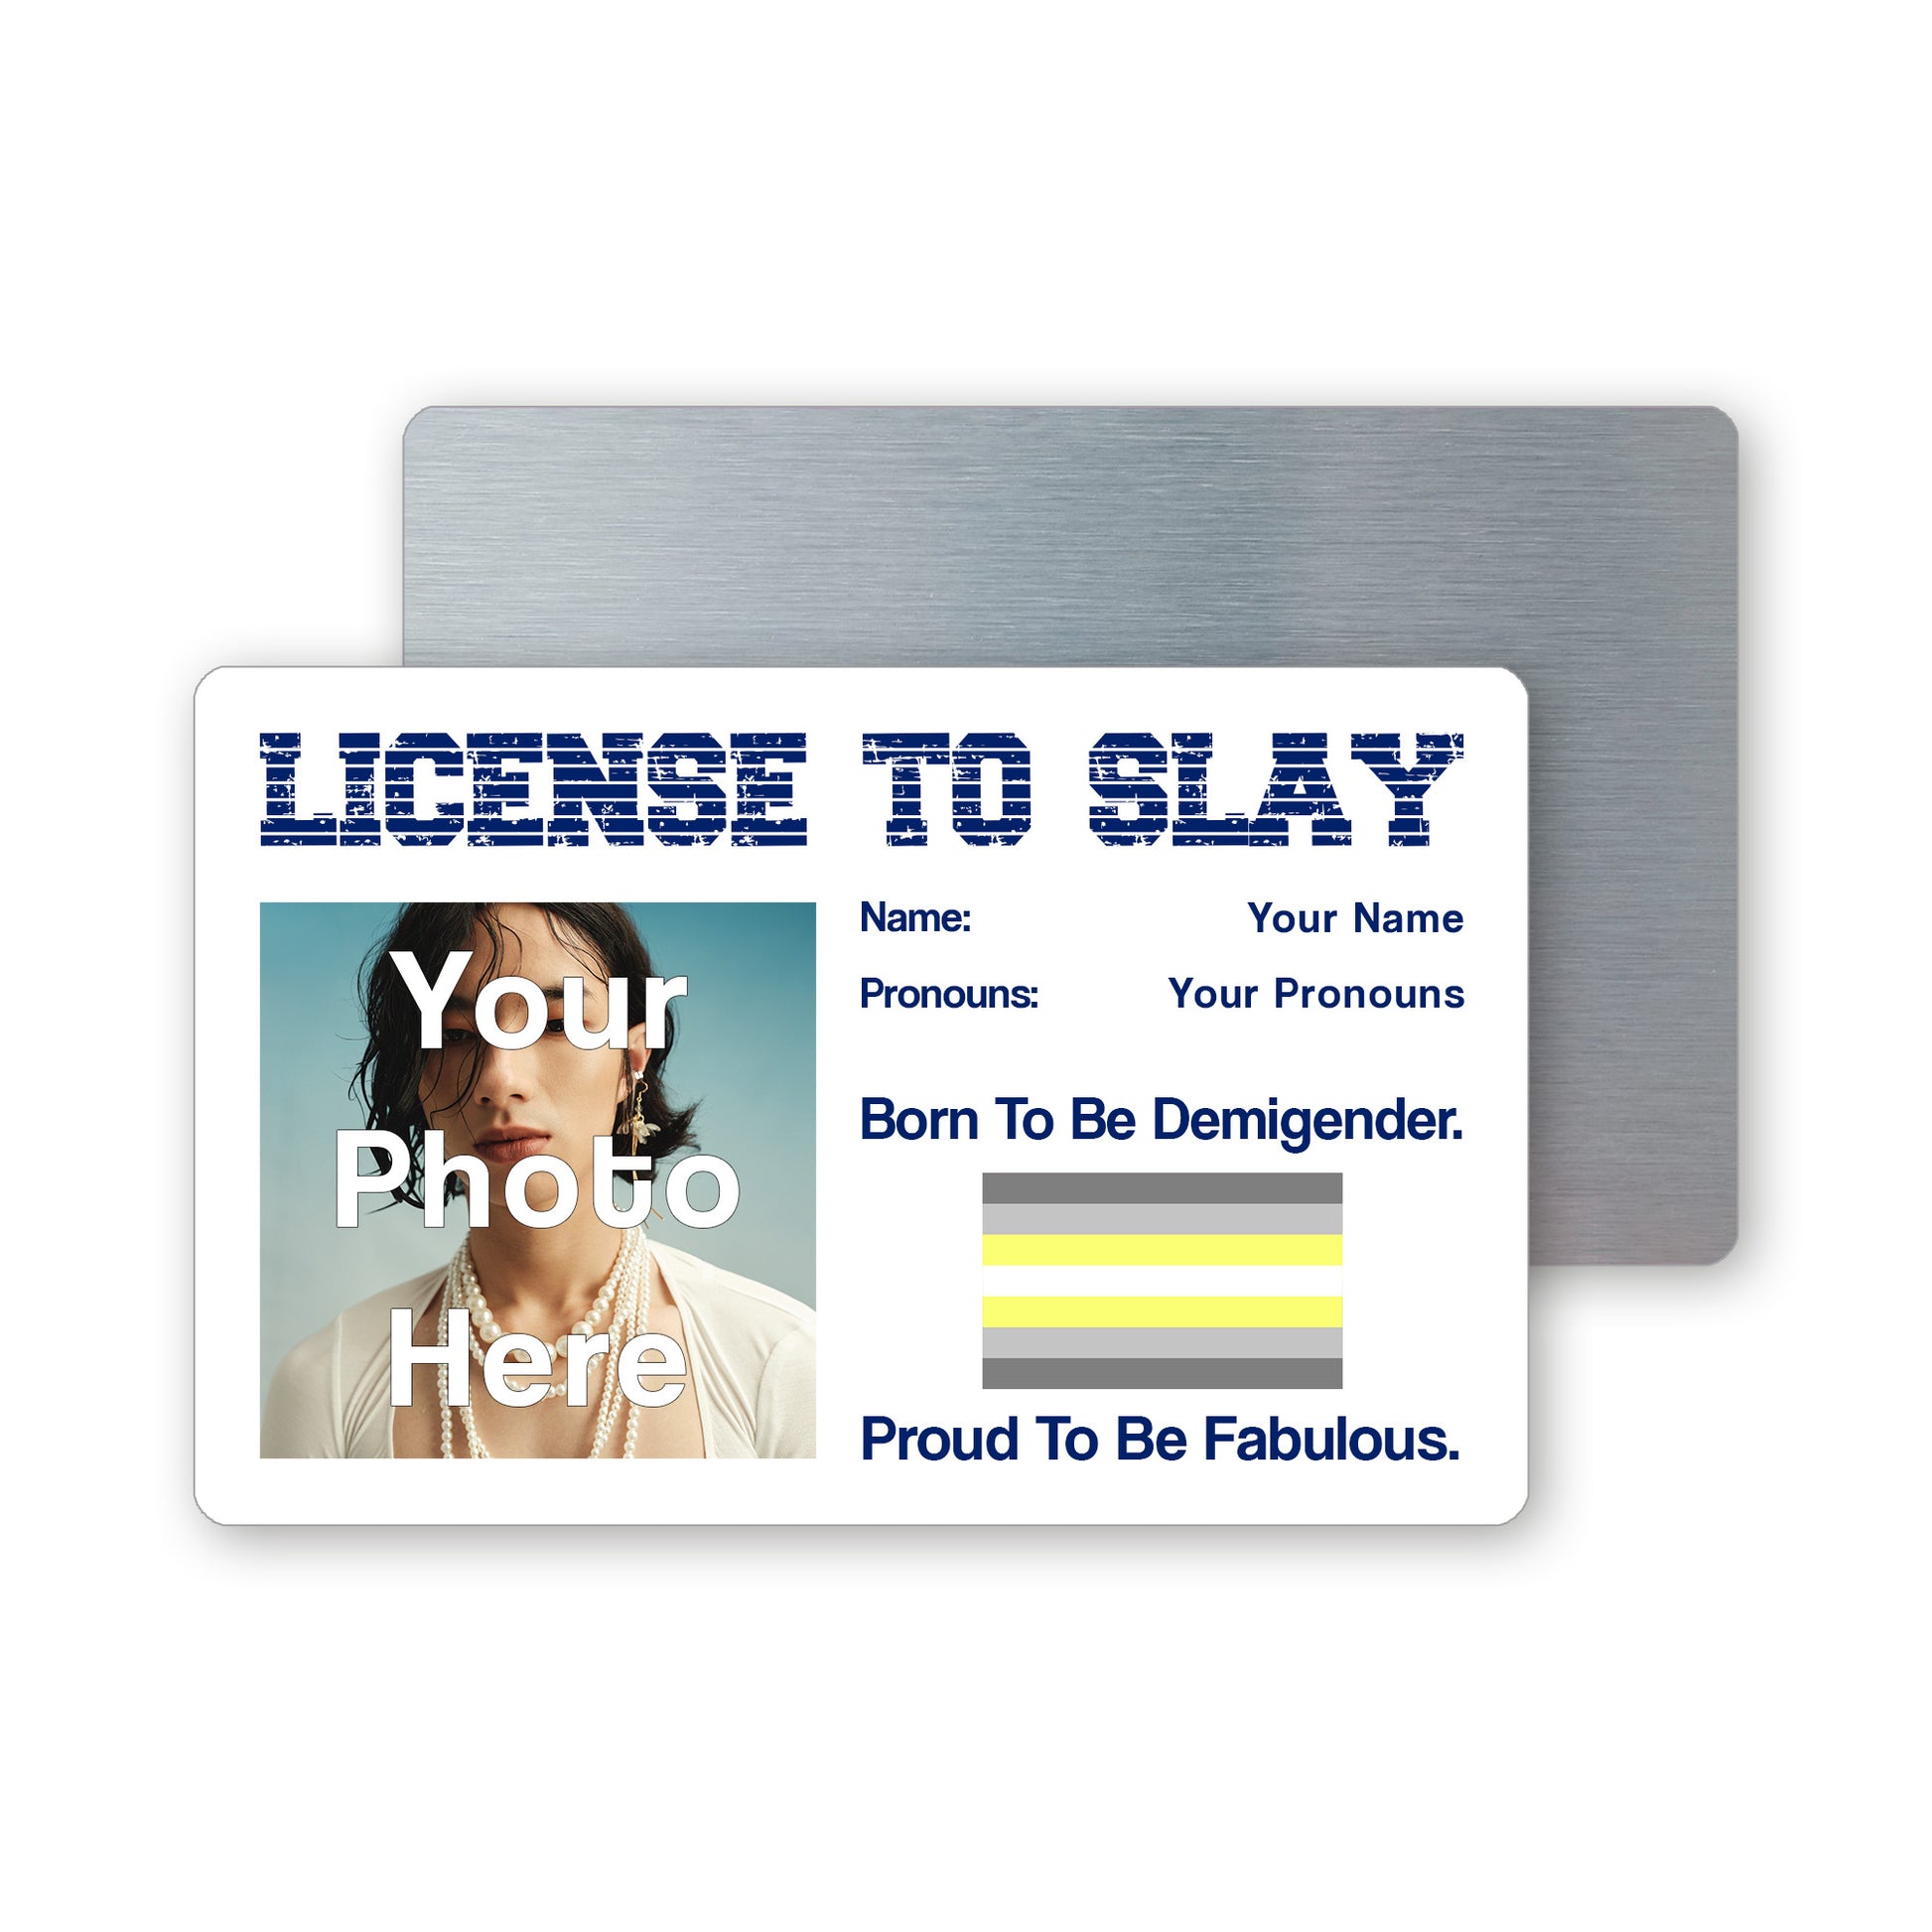 Demigender pride personalised license to slay card